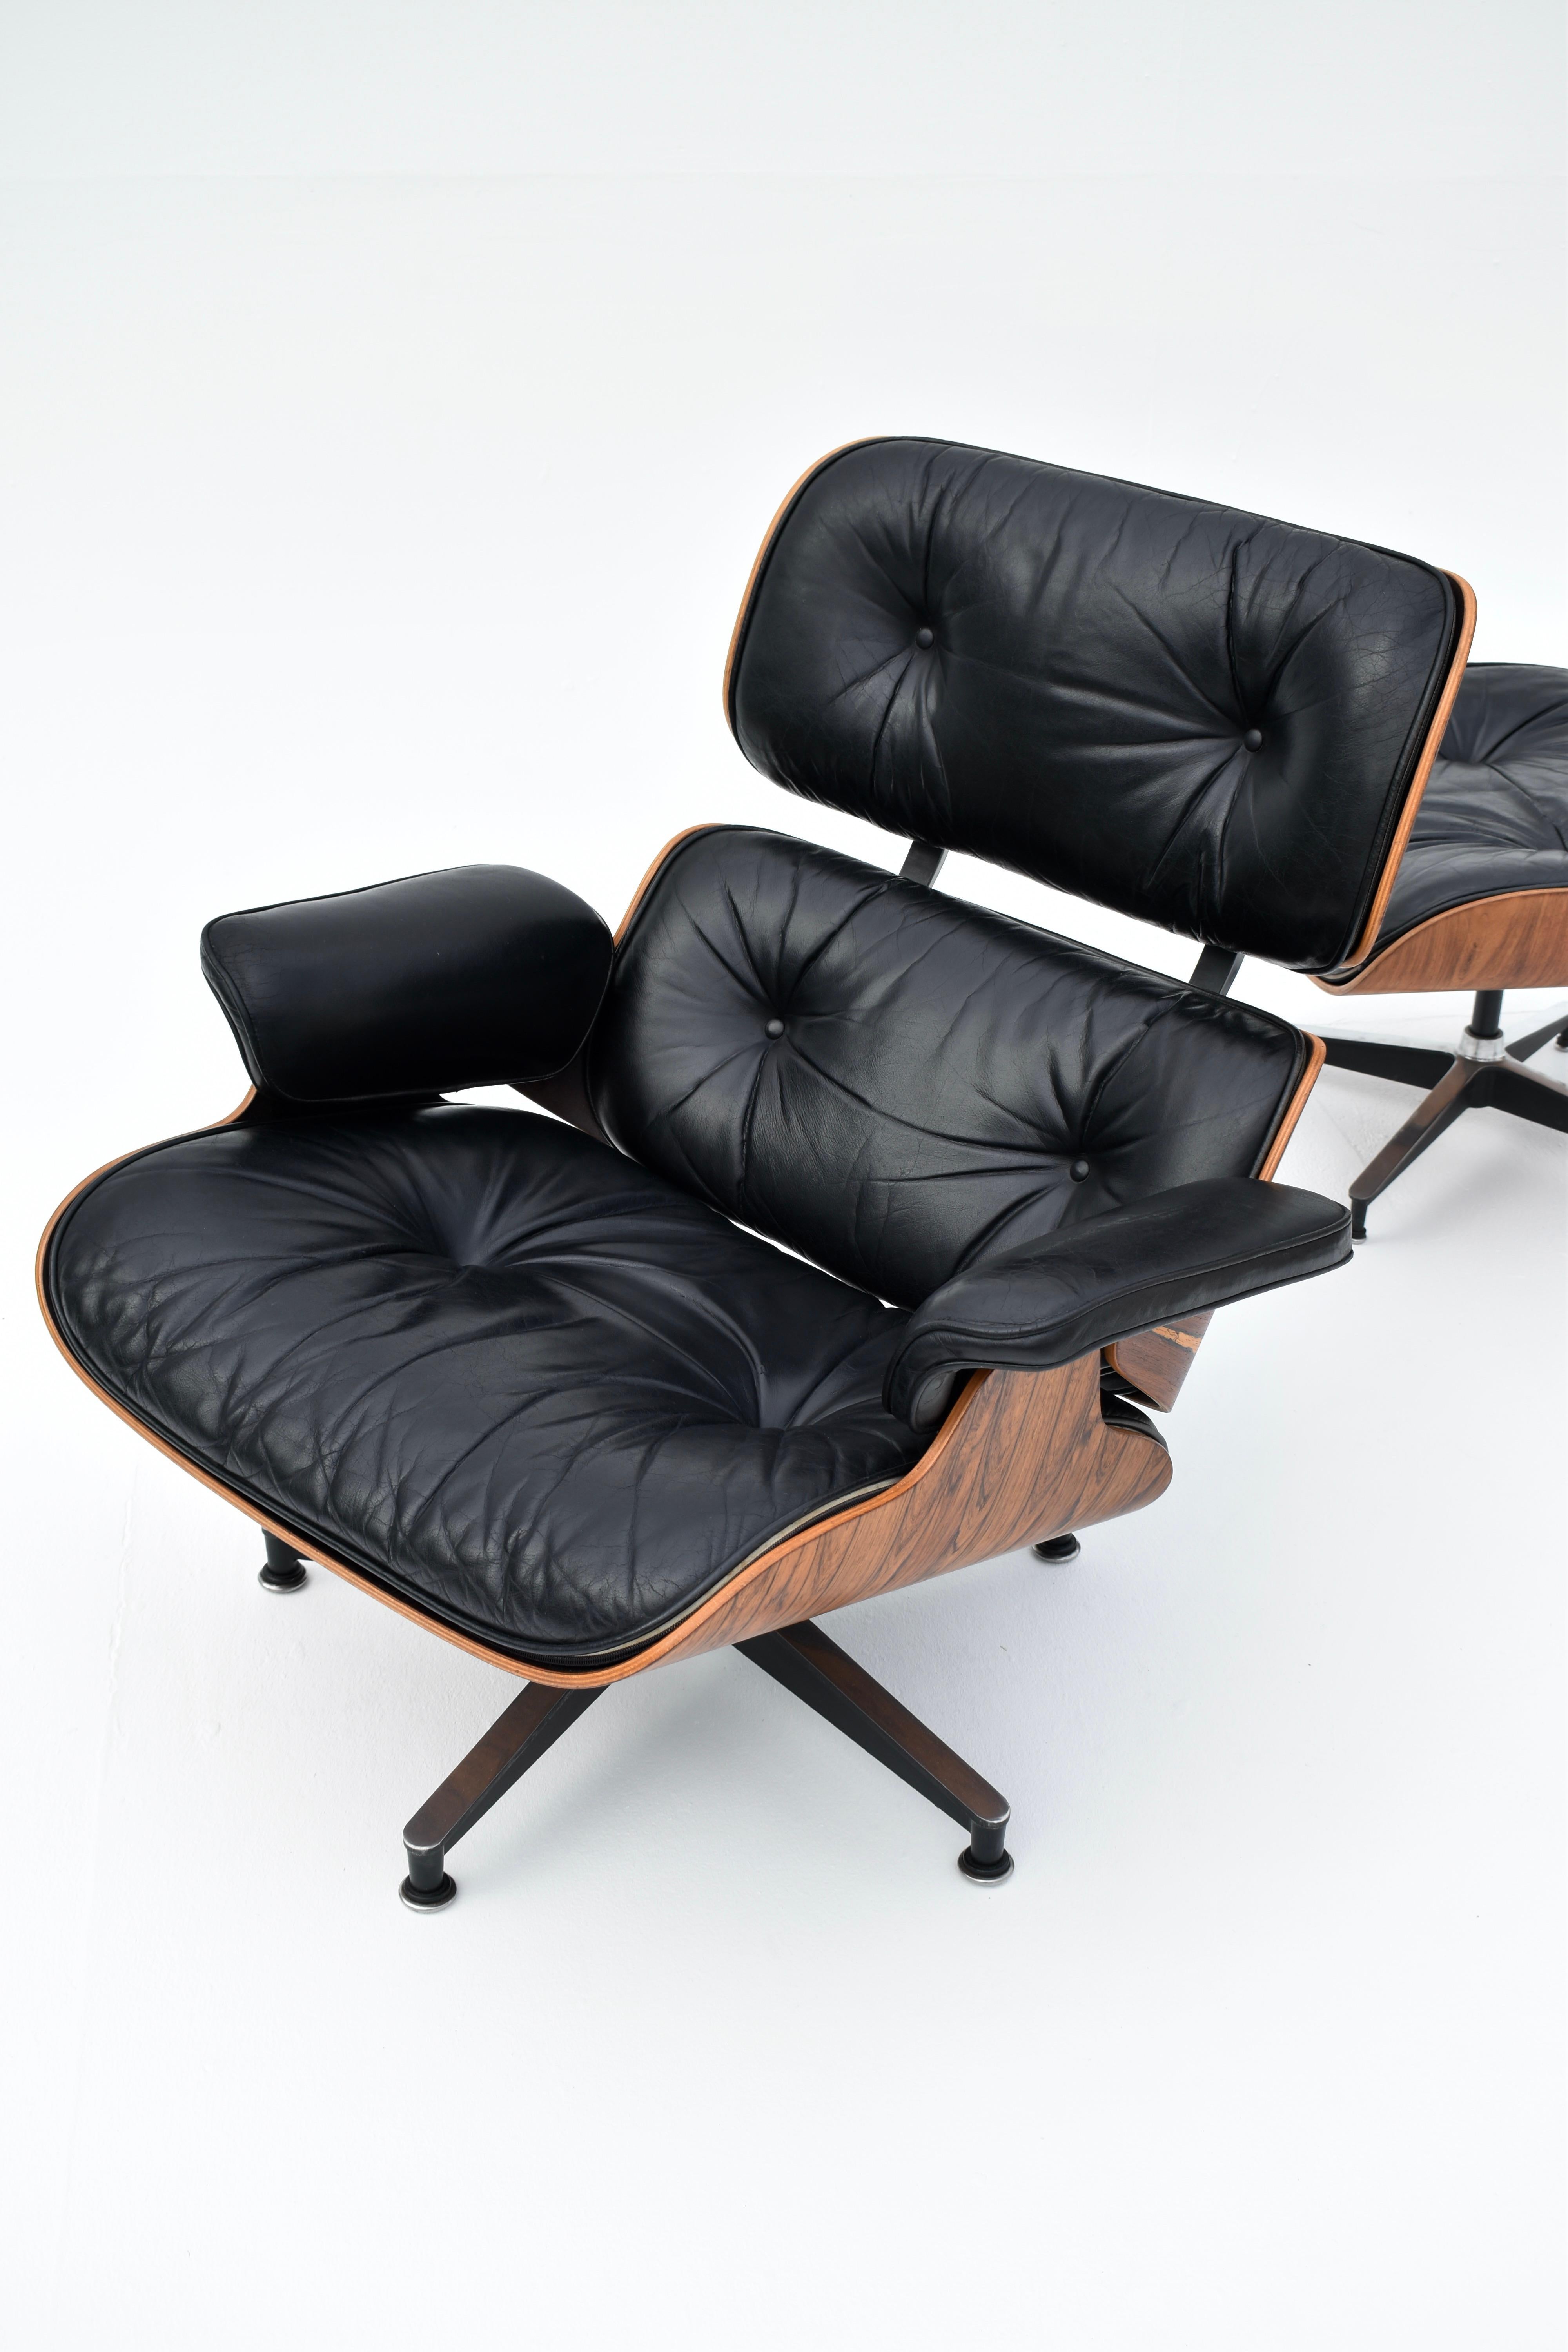 Original Eames Lounge Chair & Ottoman en bois de rose brésilien et cuir noir pour Herman Miller.

Il s'agit d'un très bel exemplaire, dont les placages de bois de rose présentent un aspect très spectaculaire et attrayant, et dont les coussins sont